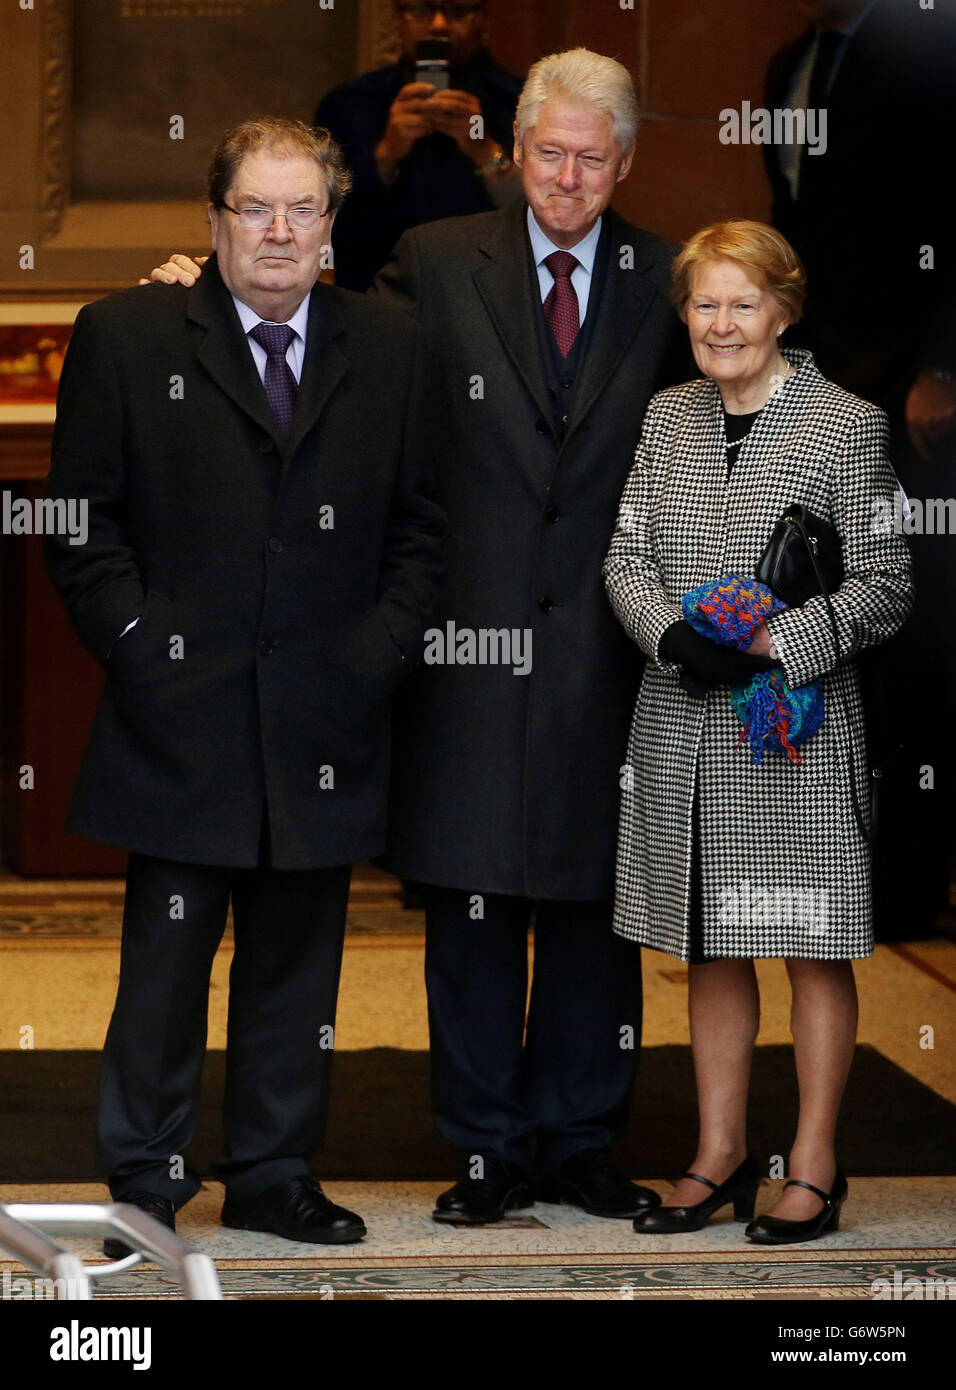 El ex presidente de los Estados Unidos, Bill Clinton, junto con el ex líder del SDLP, John Hume, y su esposa Pat, rinden homenaje al pacifista en el Guildhall de Londonderry durante su visita a la región. Foto de stock